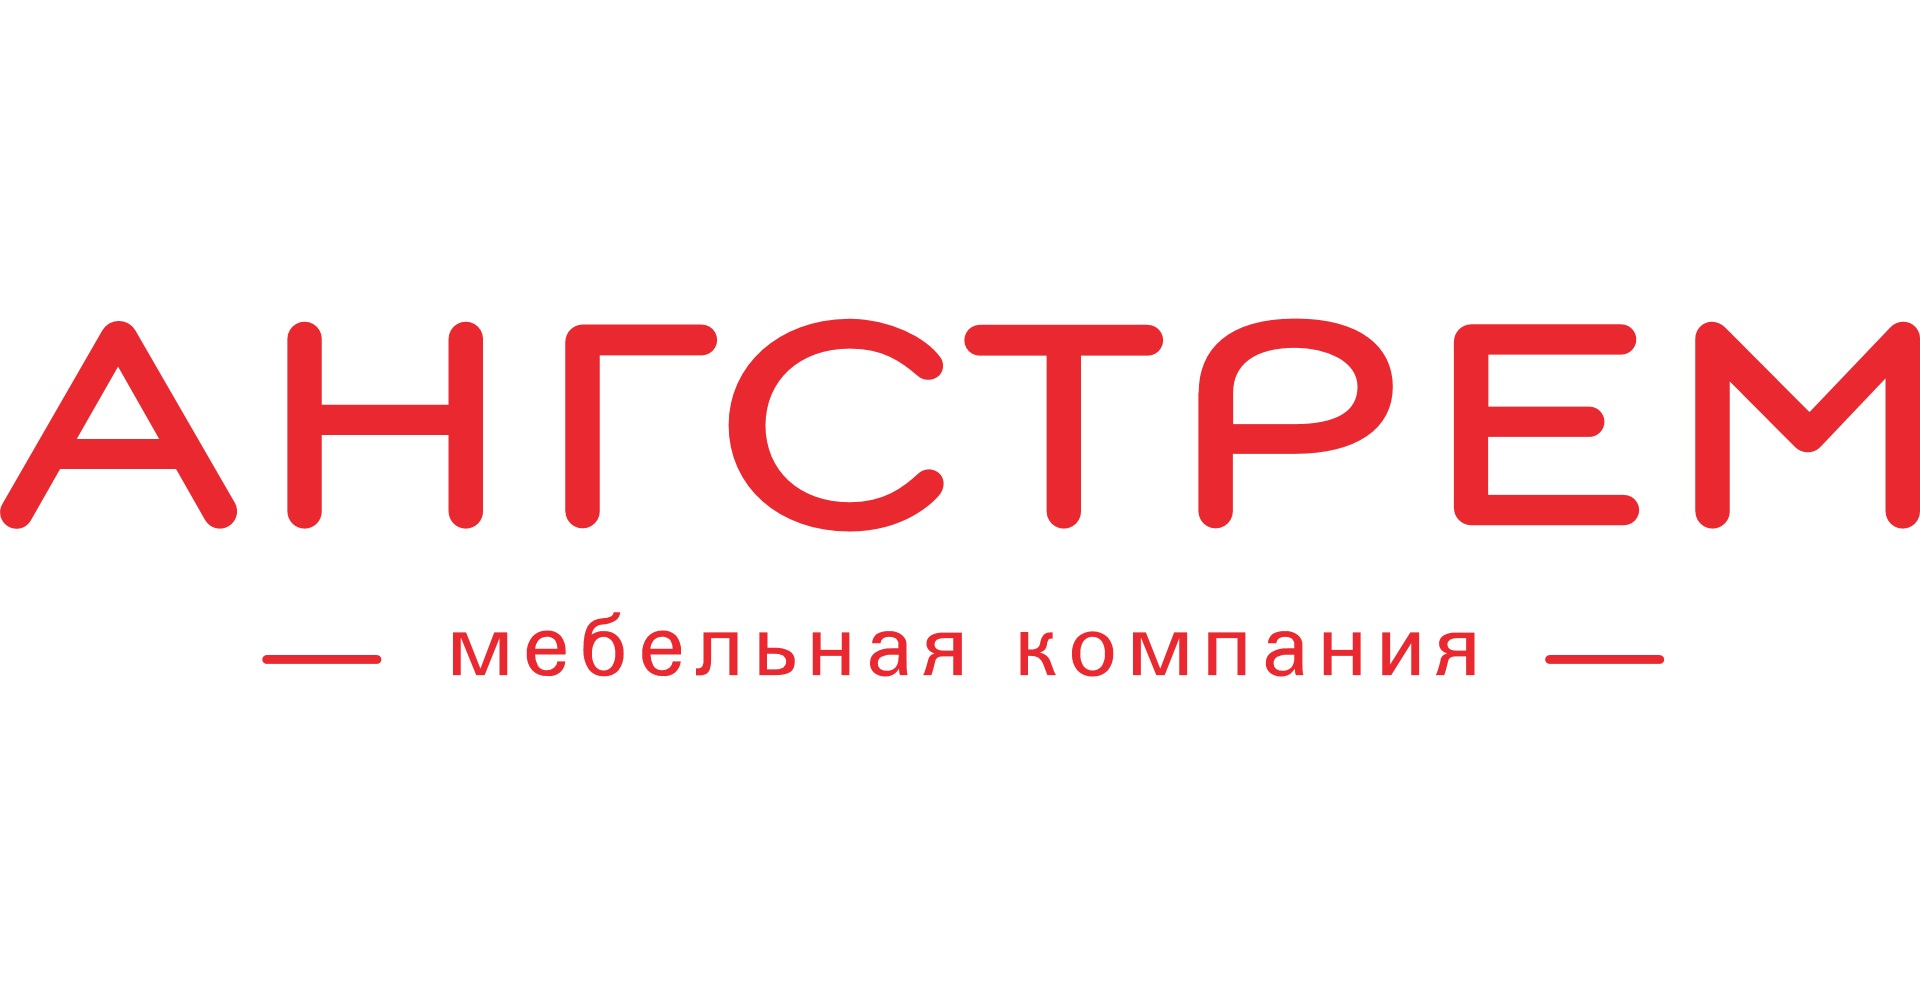 Мебельная компания «Ангстрем» предлагает квалифицированным рабочим зарплаты на 35% выше средней по России - фото 1